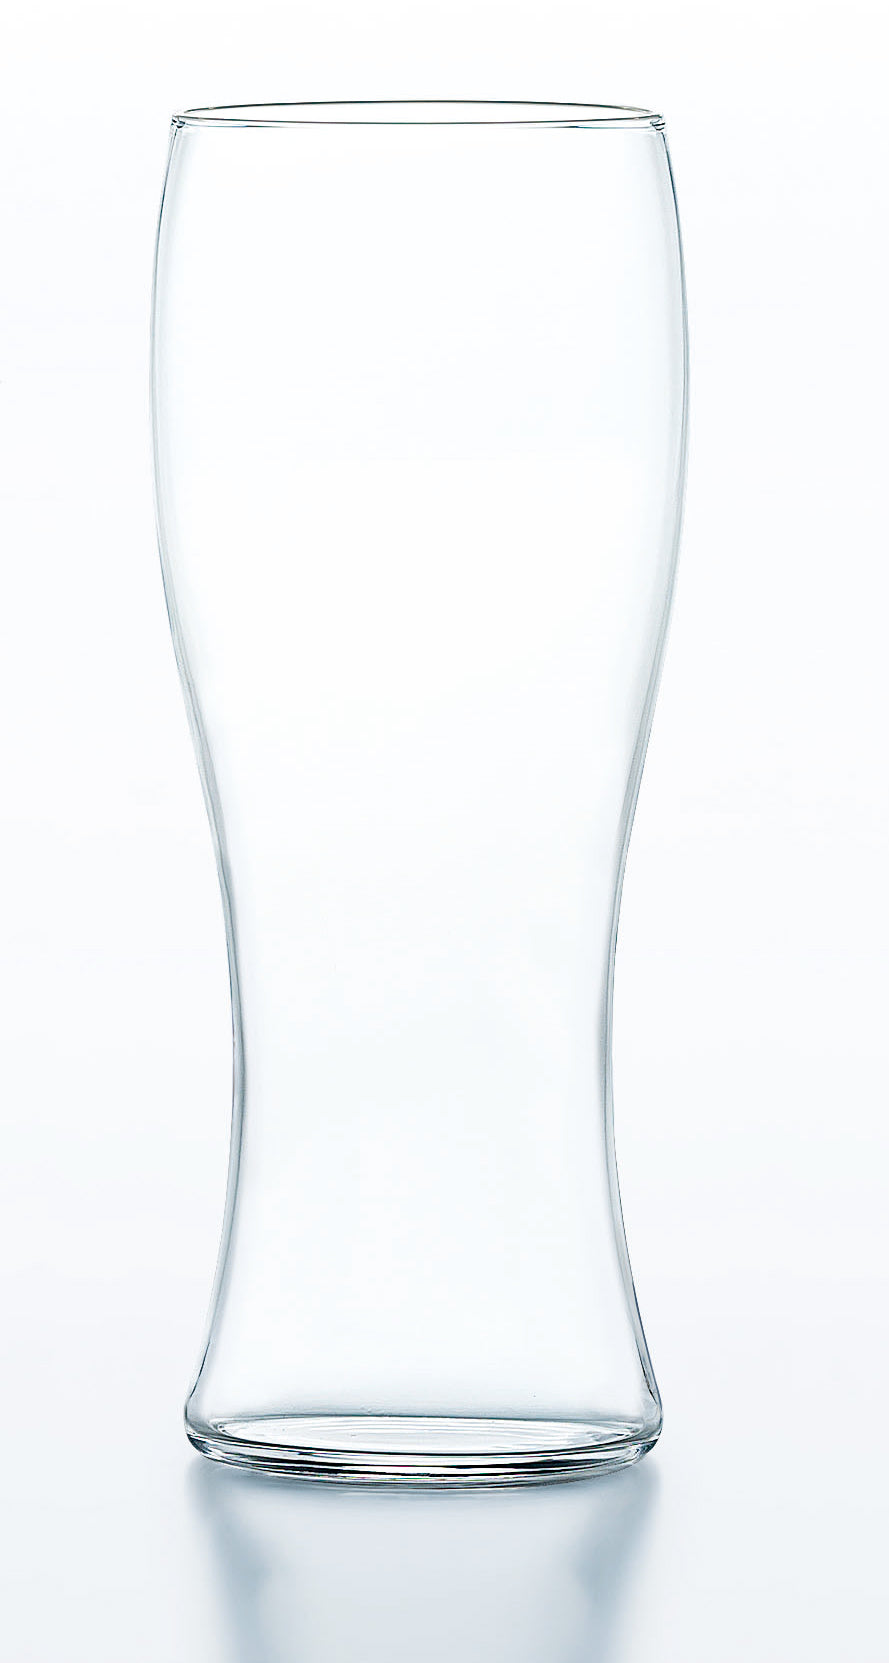 3502-0042　グラス器　薄氷 ビヤーグラス
（6.9φ×H17）
（395ml）3個入り